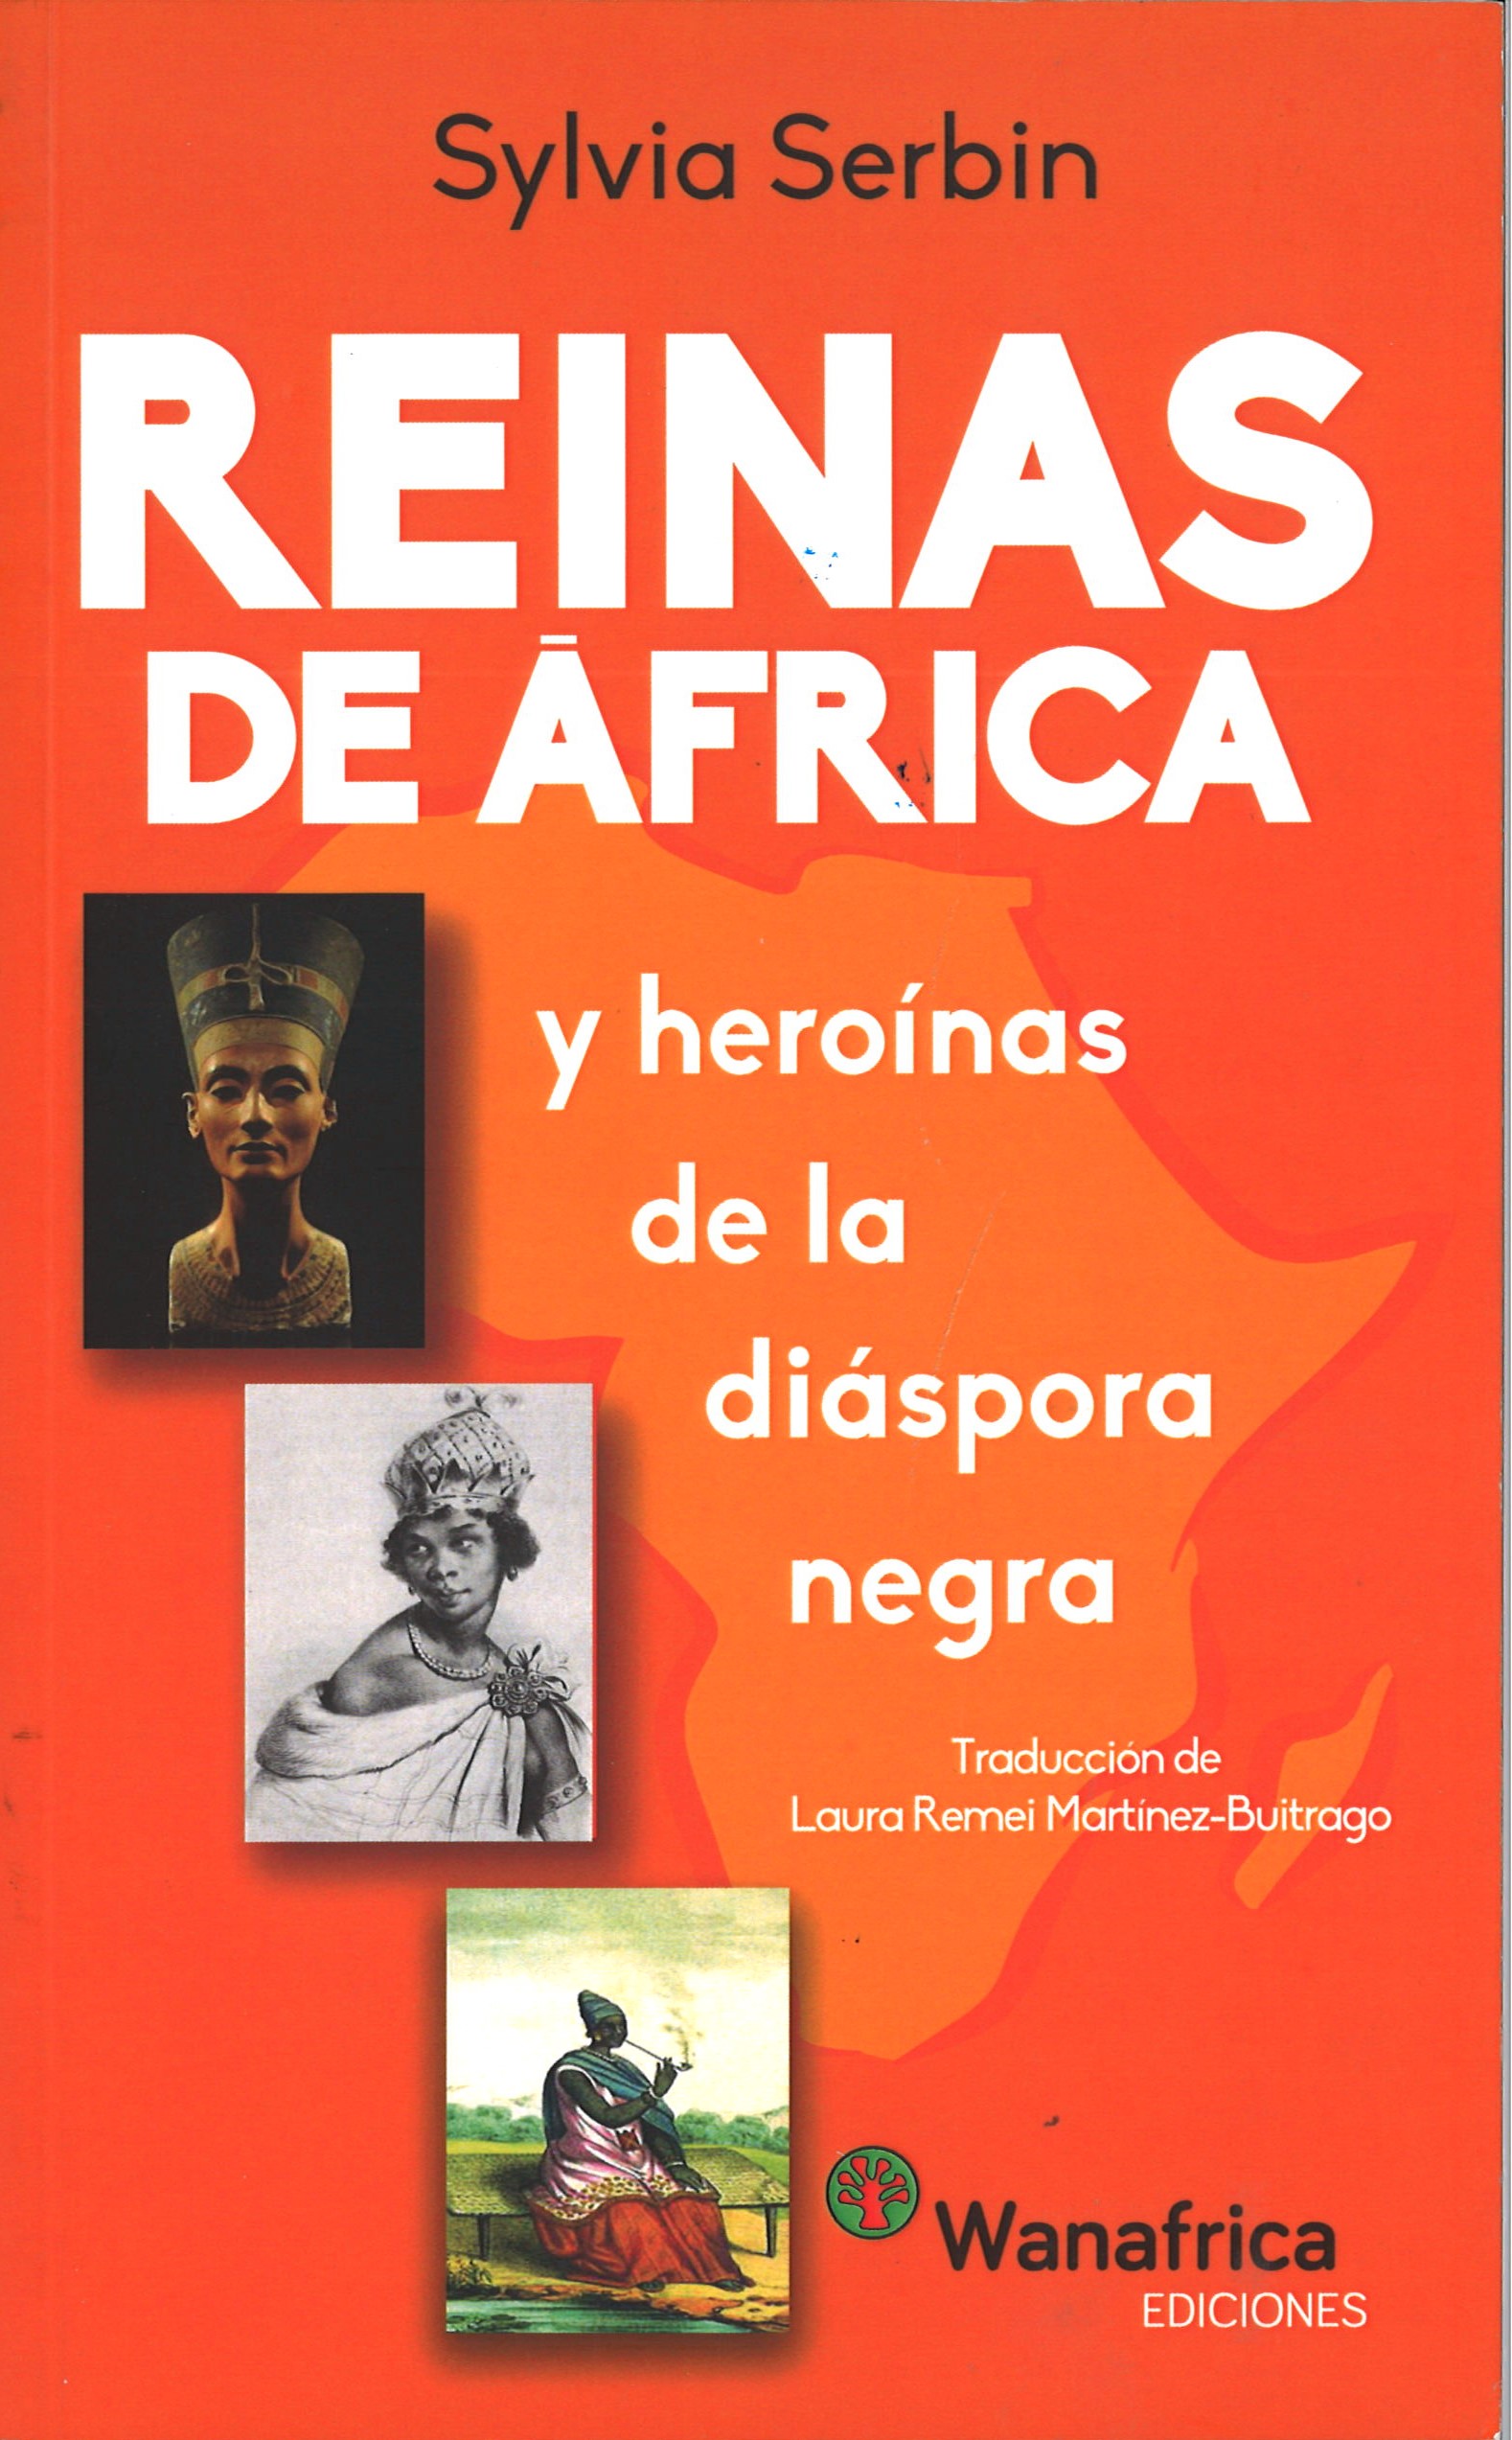 Reinas de África y heroínas de la diásporra negra-Sylvia Serbin-image